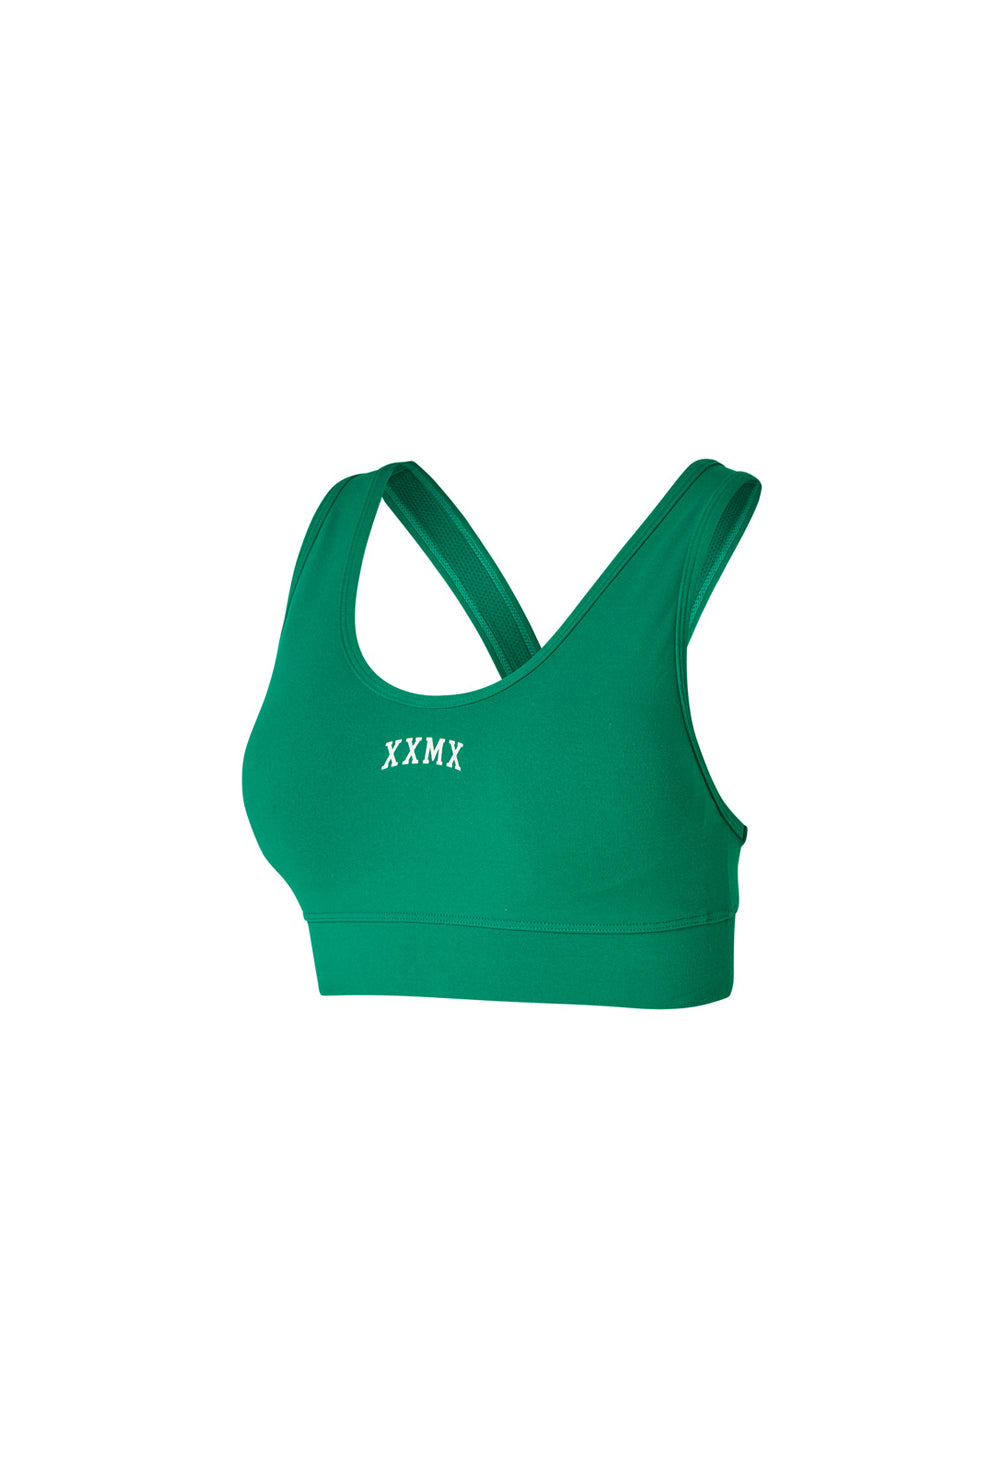 XXMX Basic Support Bra Top - Ivy Green